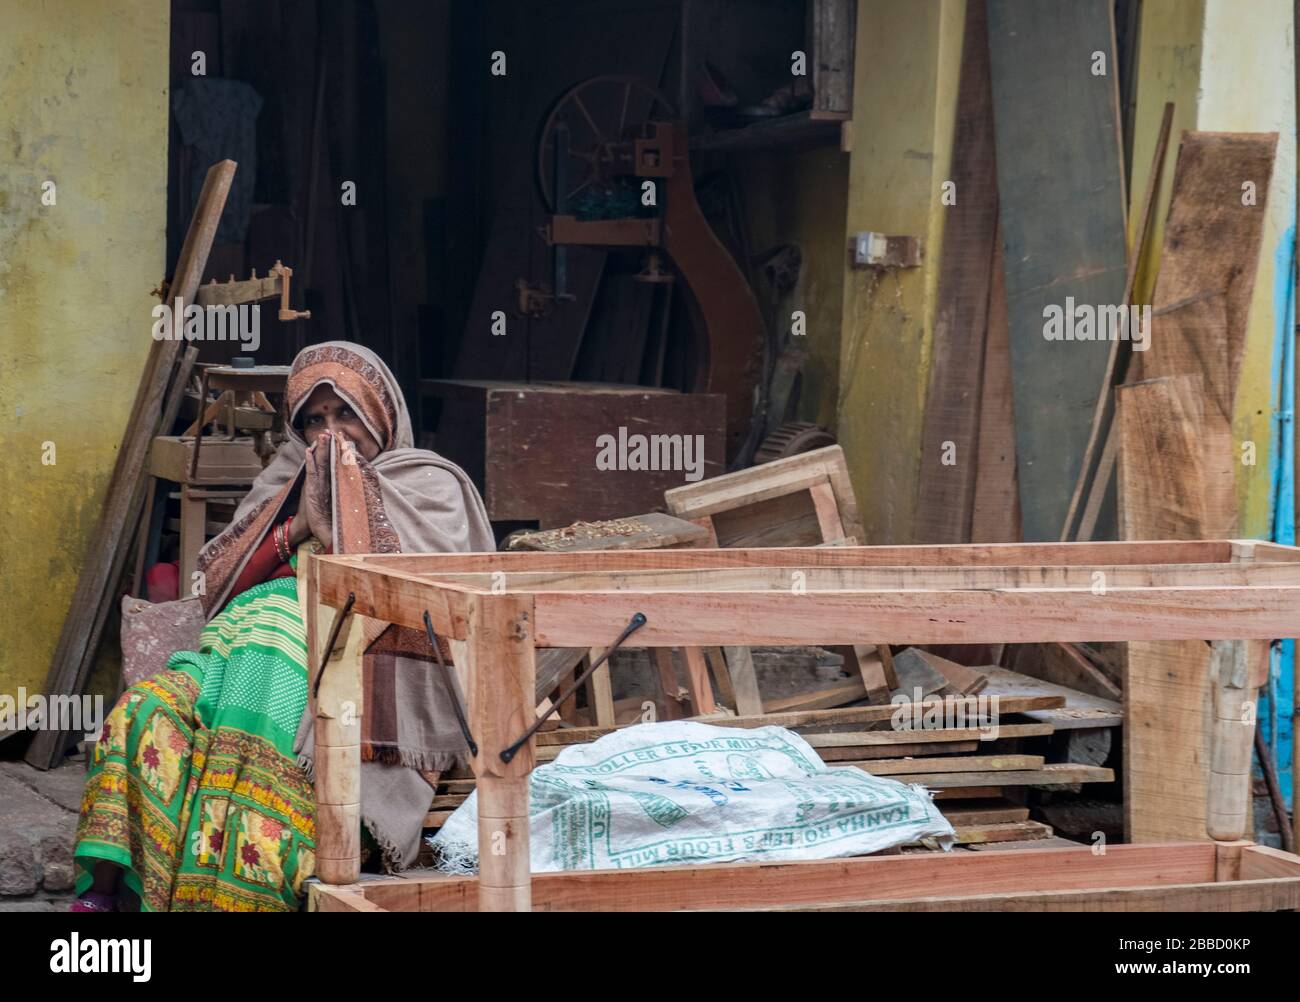 Alte indische Frau sitzt vor einer Familie Tisch Herstellung Werkstatt, Begrüßung Passanten vorbei Stockfoto